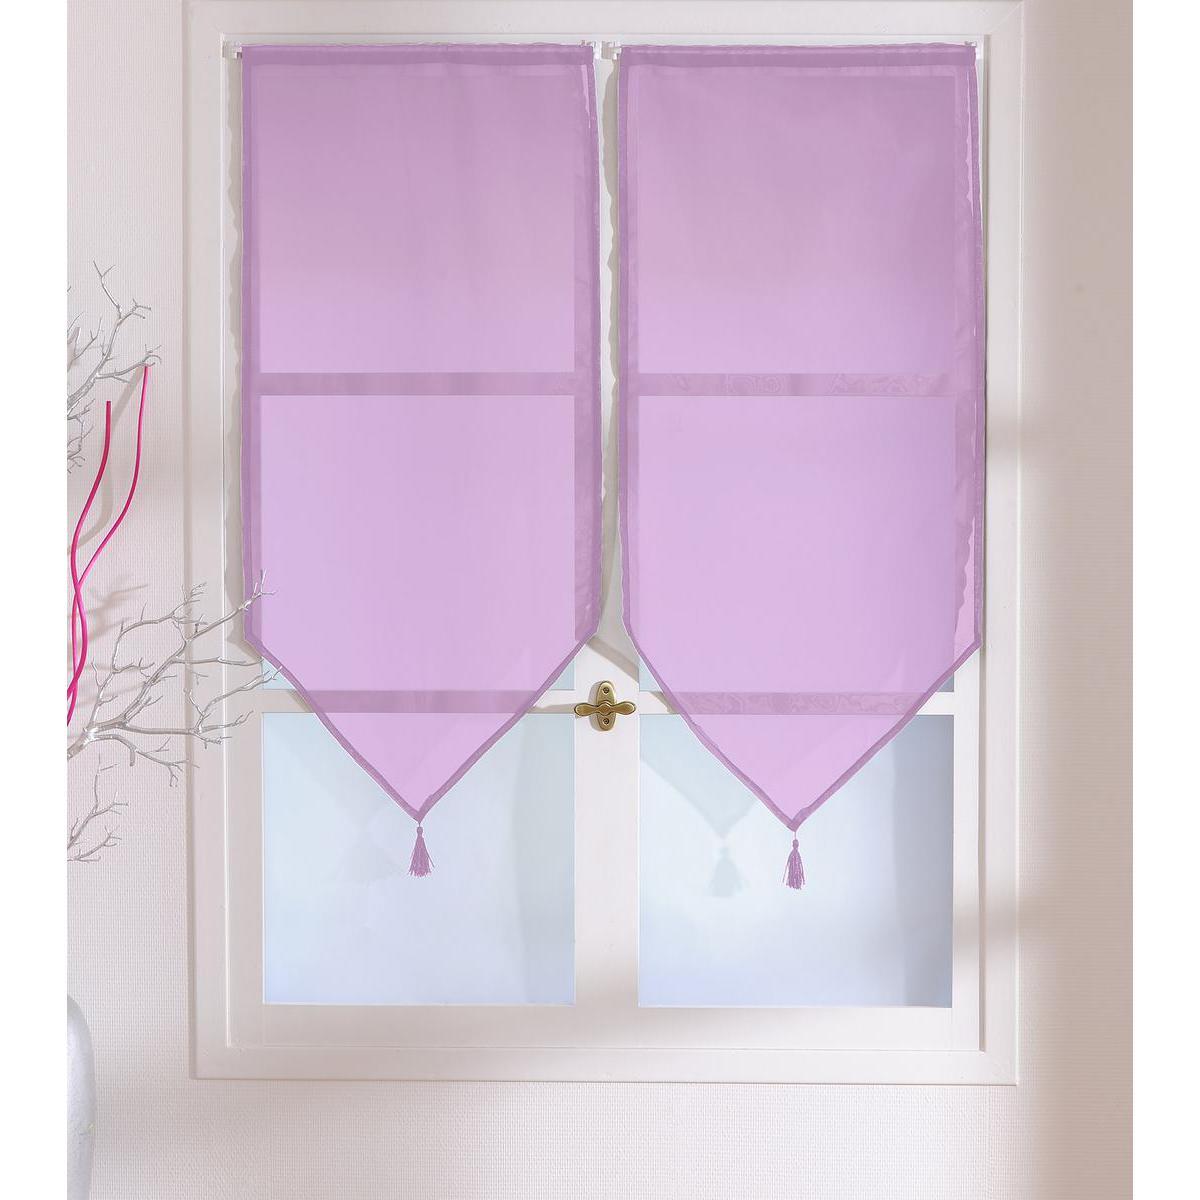 Paire de vitrages - 100% polyester - 60 x 90 cm - Violet parme